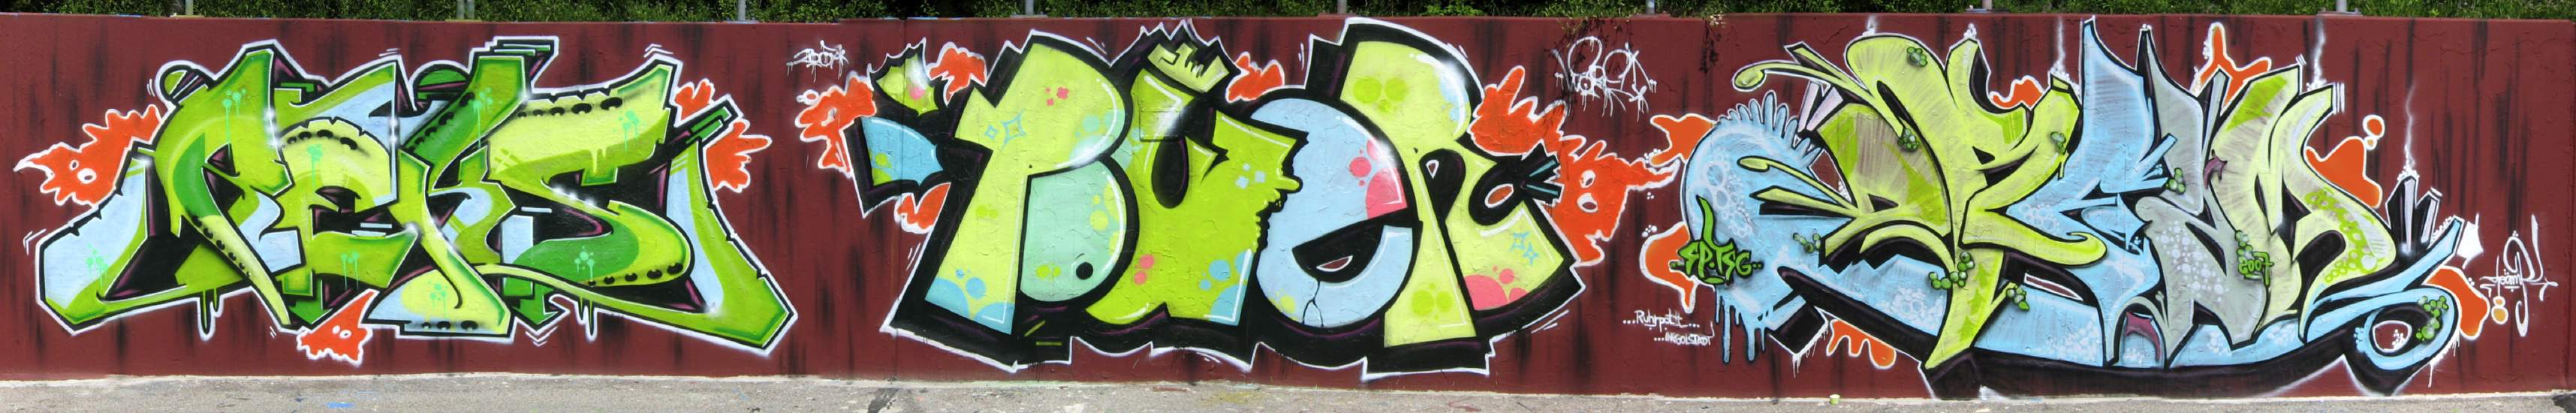 http://graffiti.org/clockwork/reks_nuts_dream_ingolstadt_june07.jpg